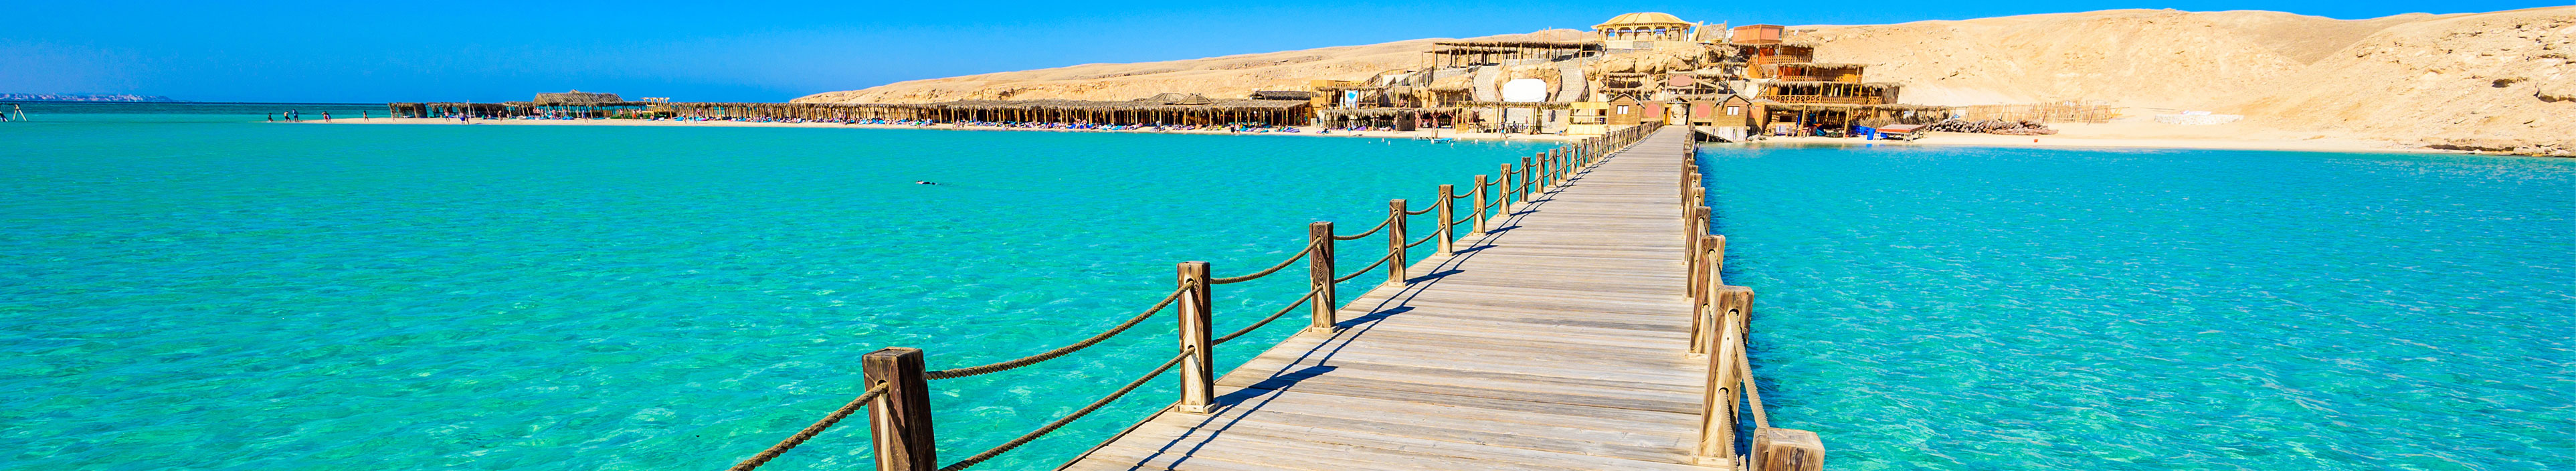 Steg an der Küste Hurghadas